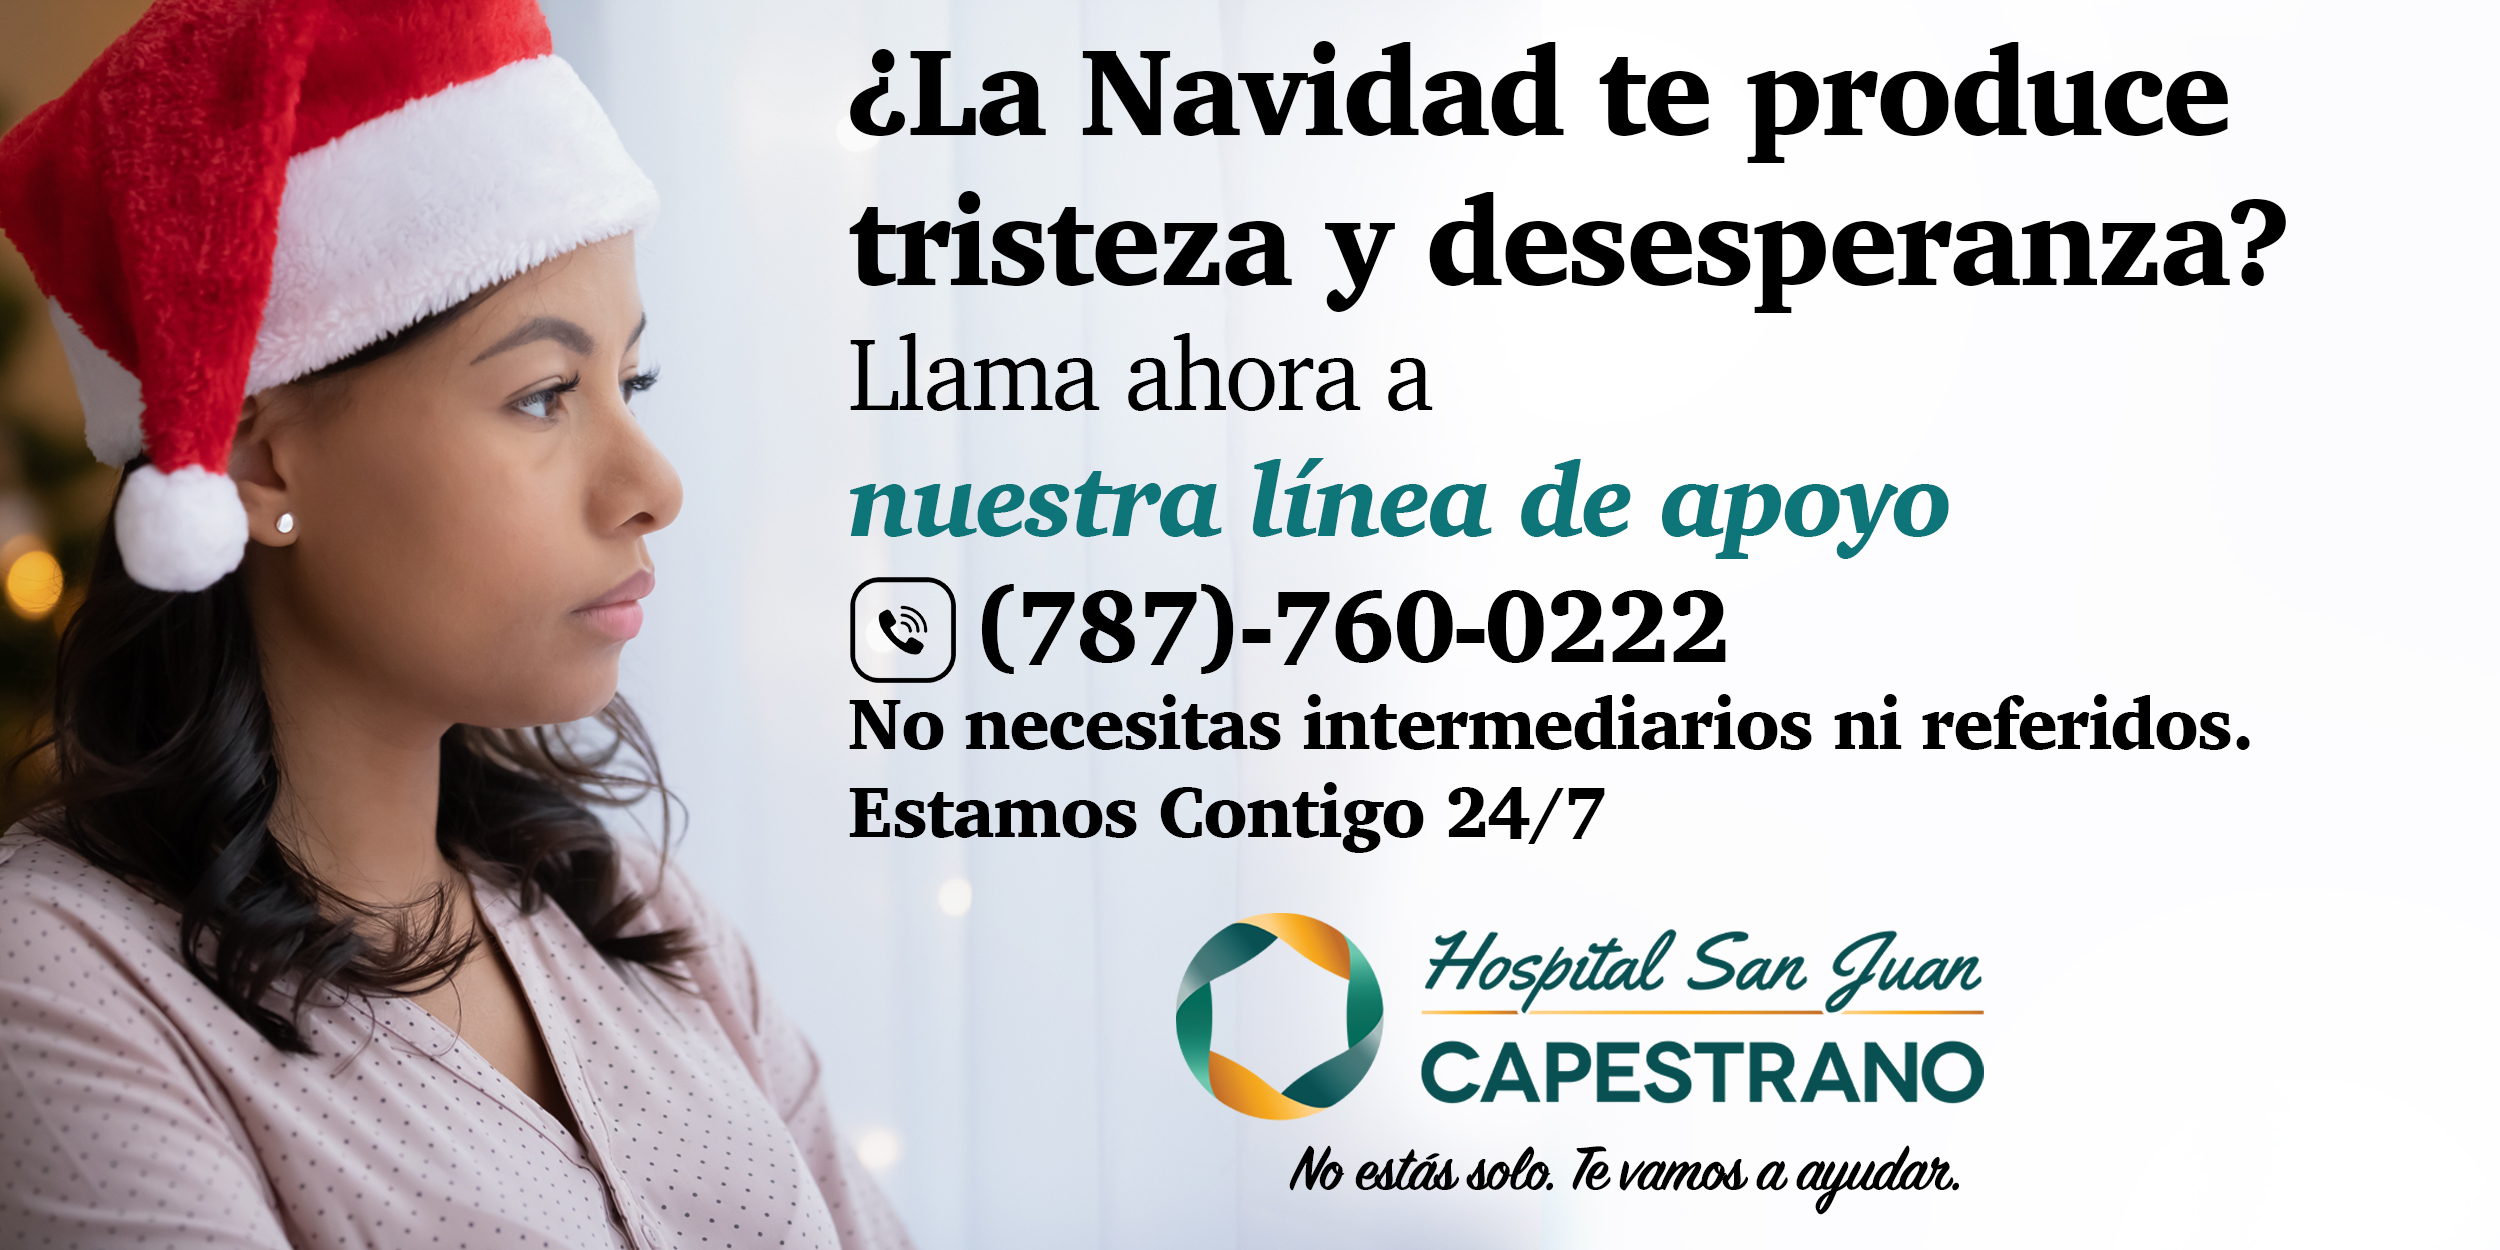 Hospital San Juan Capestrano Anuncia Iniciativas Para Manejar Las Emociones En Navidad • Wipr 8905